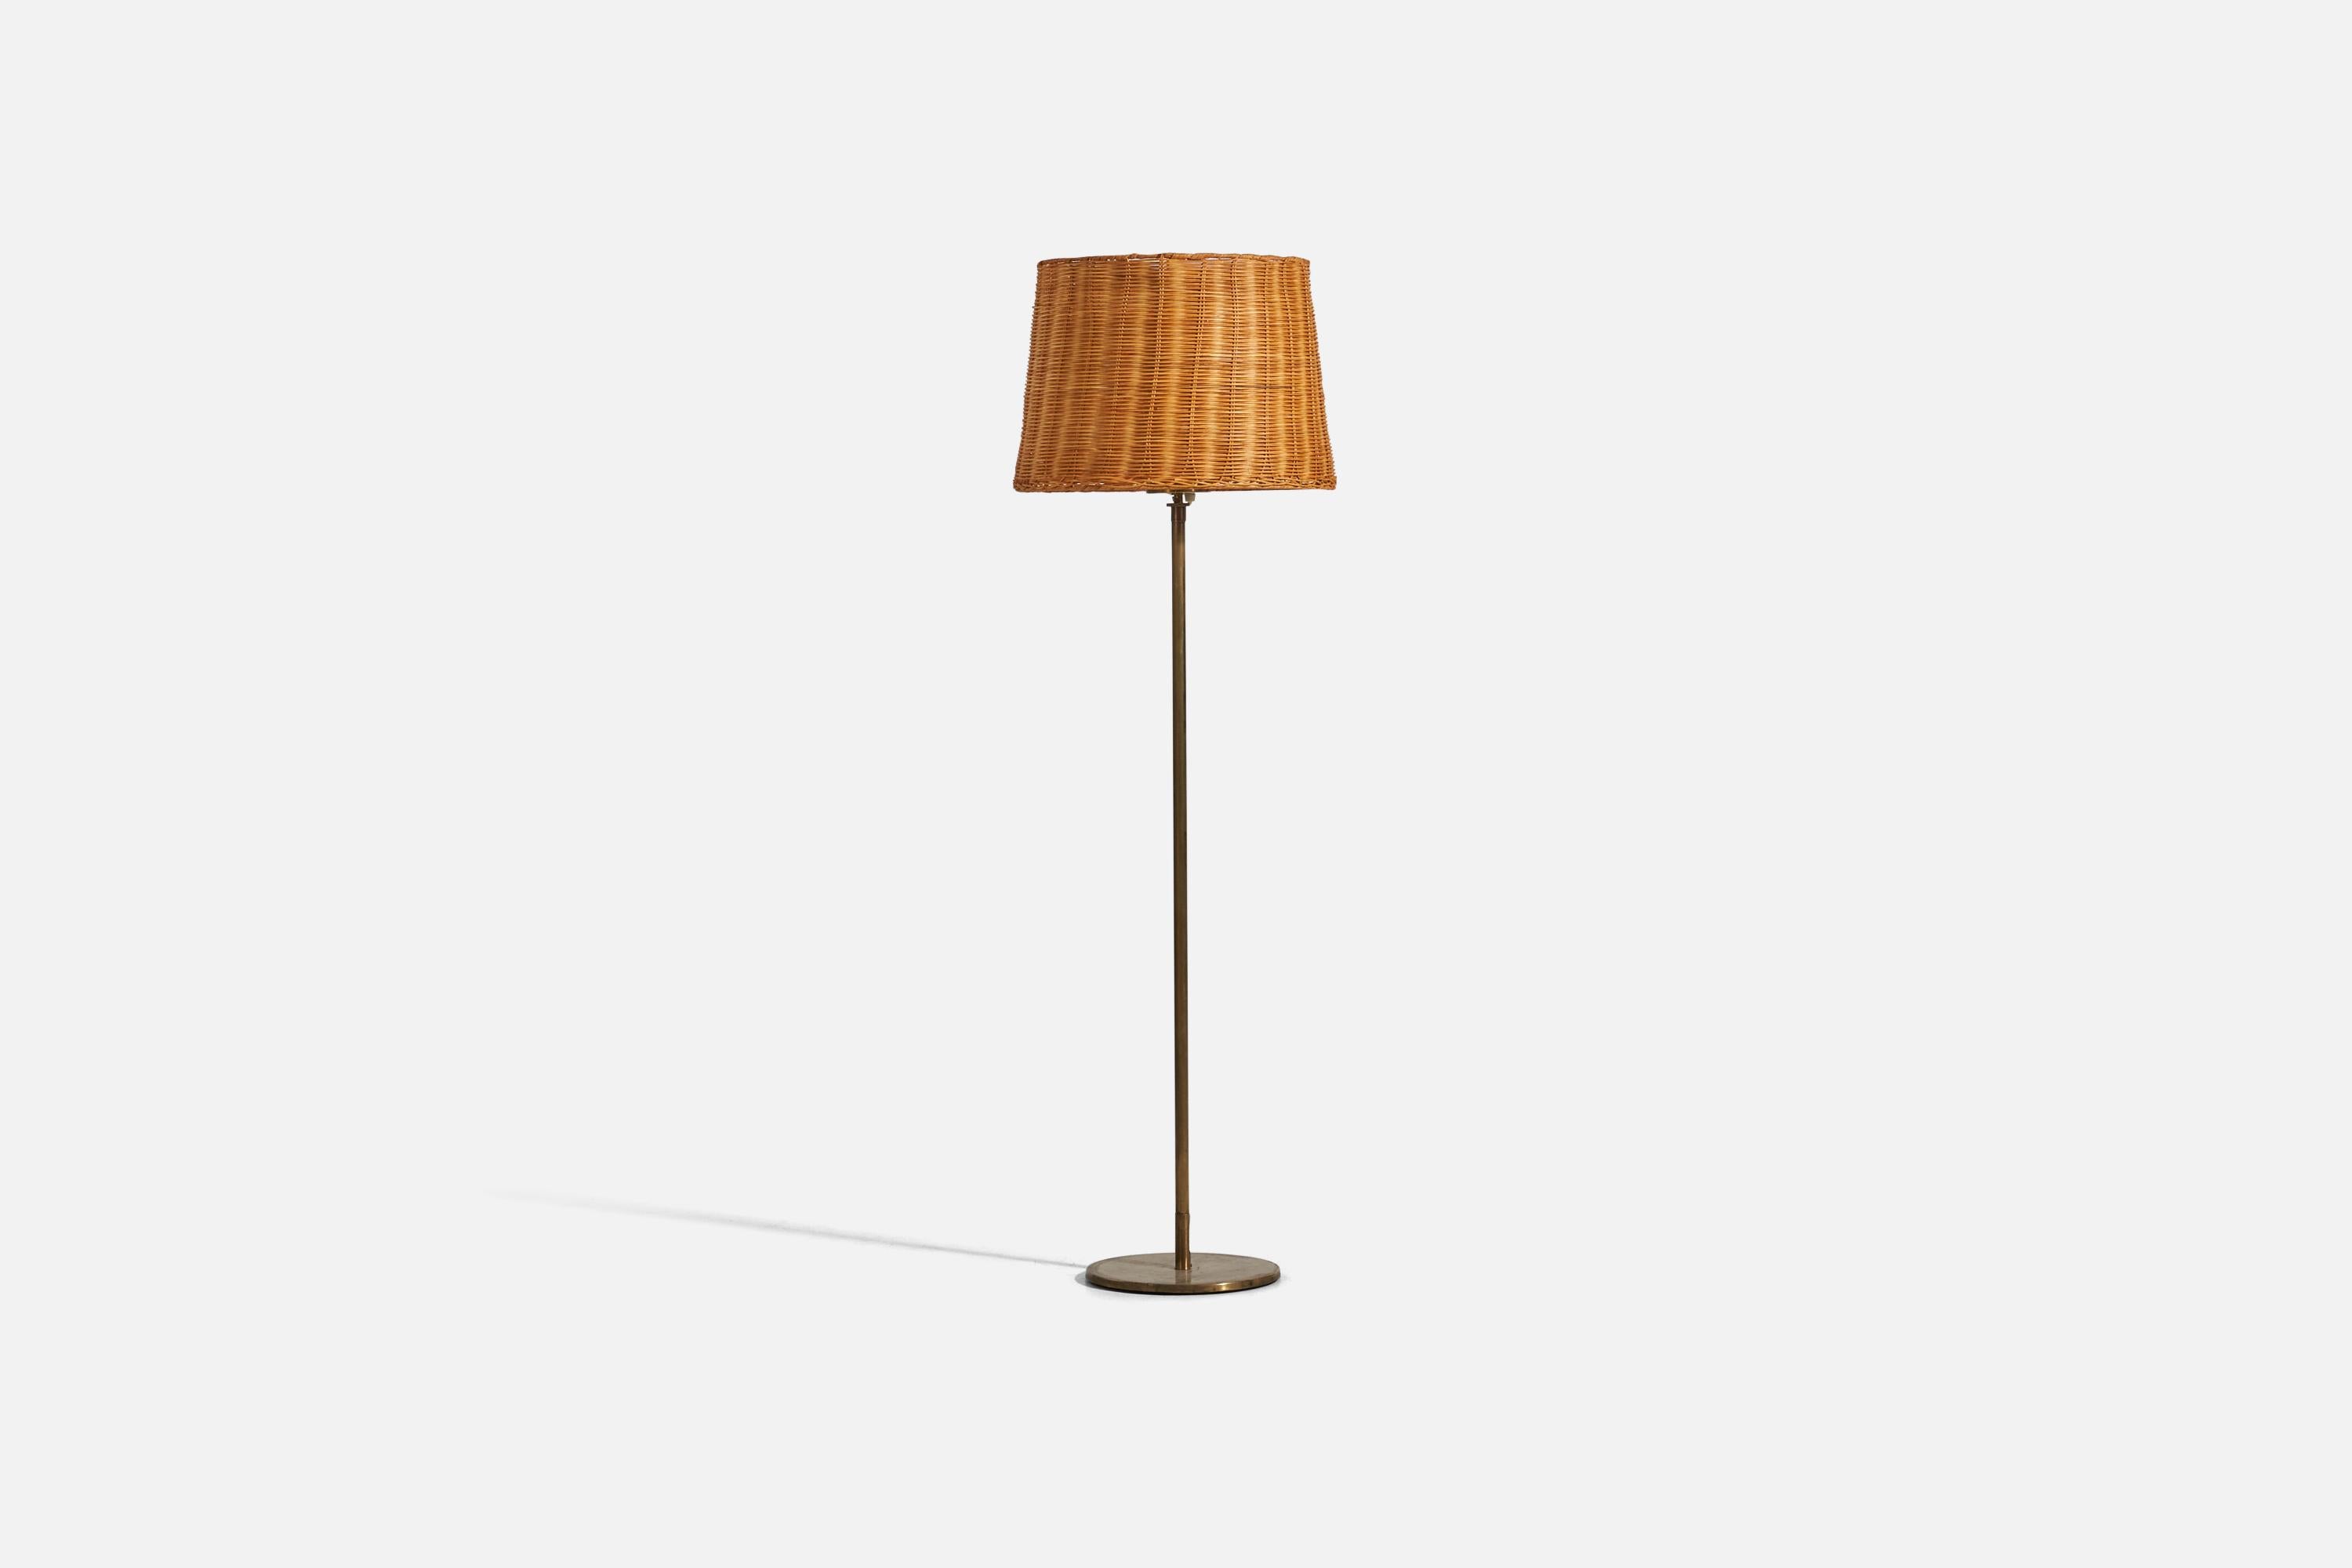 Eine Stehlampe aus Messing und Rattan, entworfen und hergestellt von einem H.W. Armatur, Schweden, 1950er Jahre. 

Abmessungen variabel, gemessen wie im ersten Bild dargestellt.

Verkauft mit Lampenschirm. Die angegebenen Maße beziehen sich auf